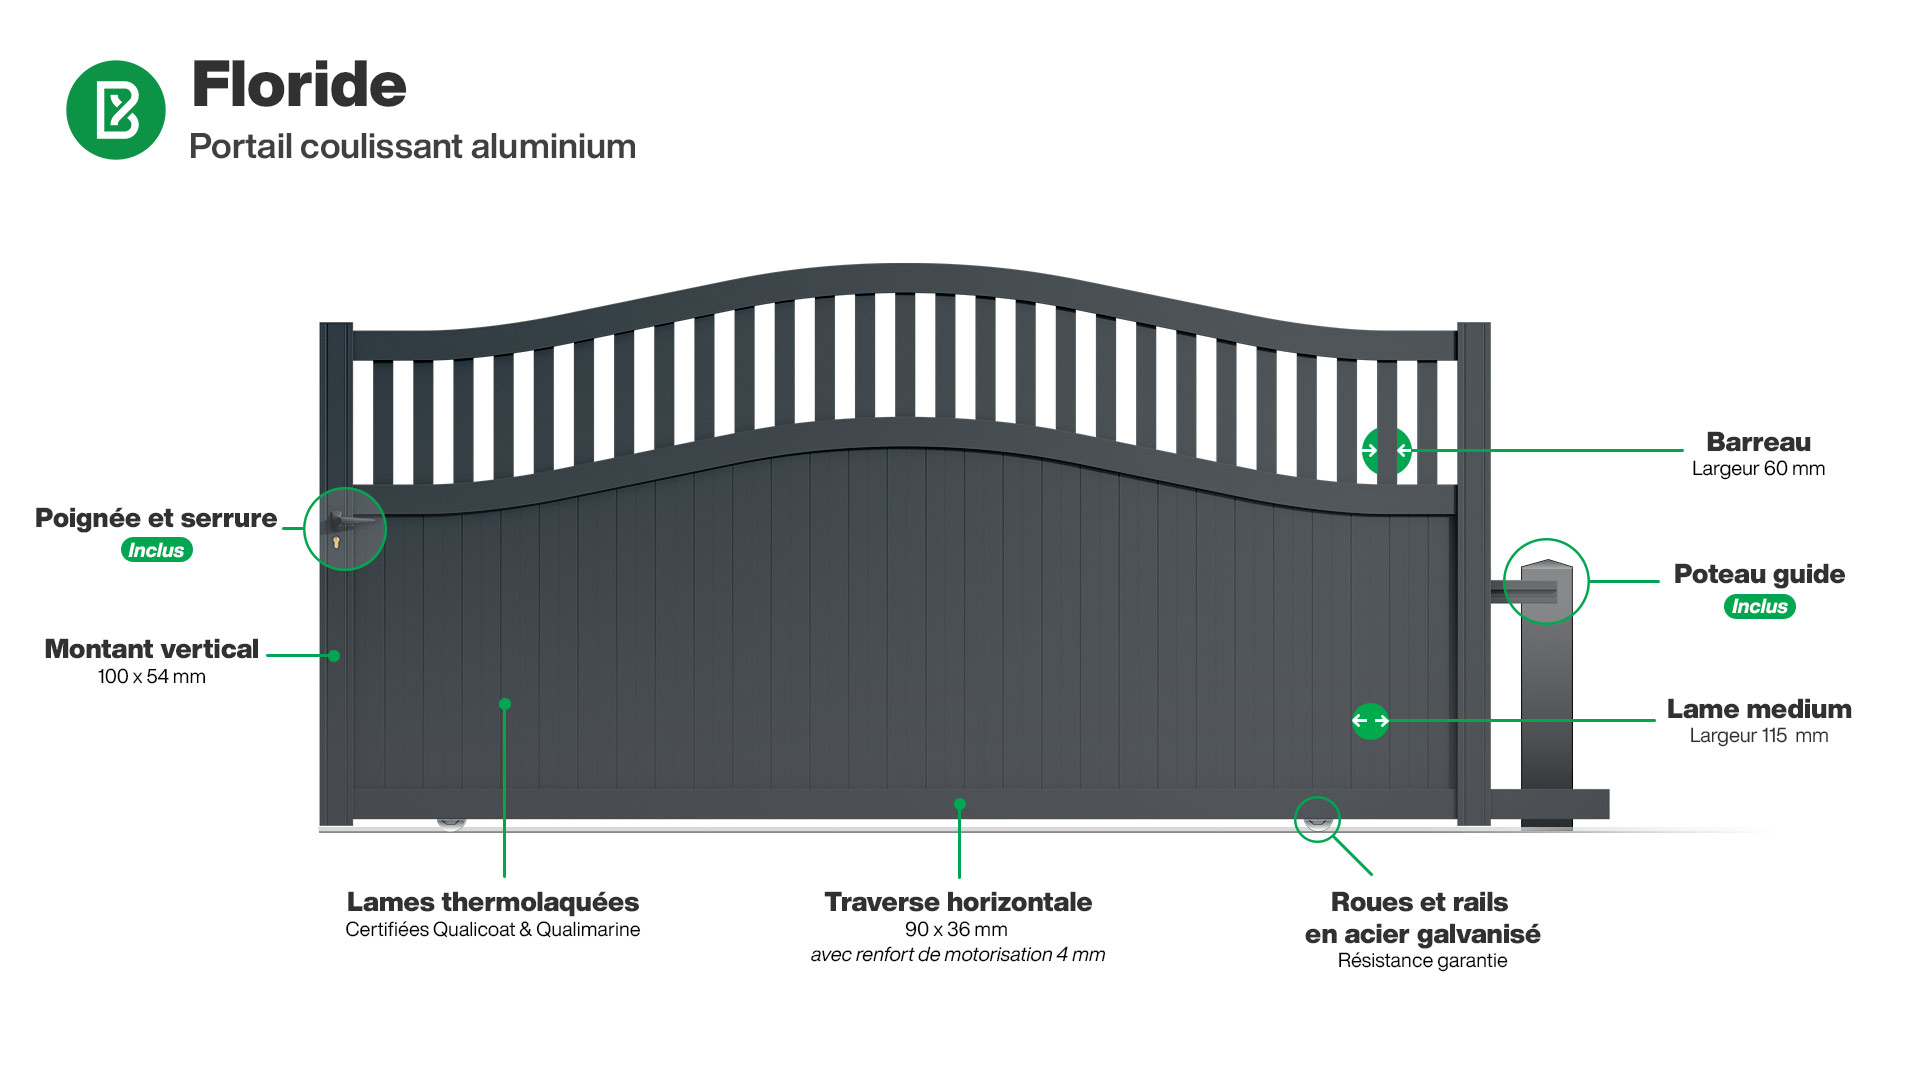 Portail : Infographie d'un portail coulissant aluminium modèle FLORIDE